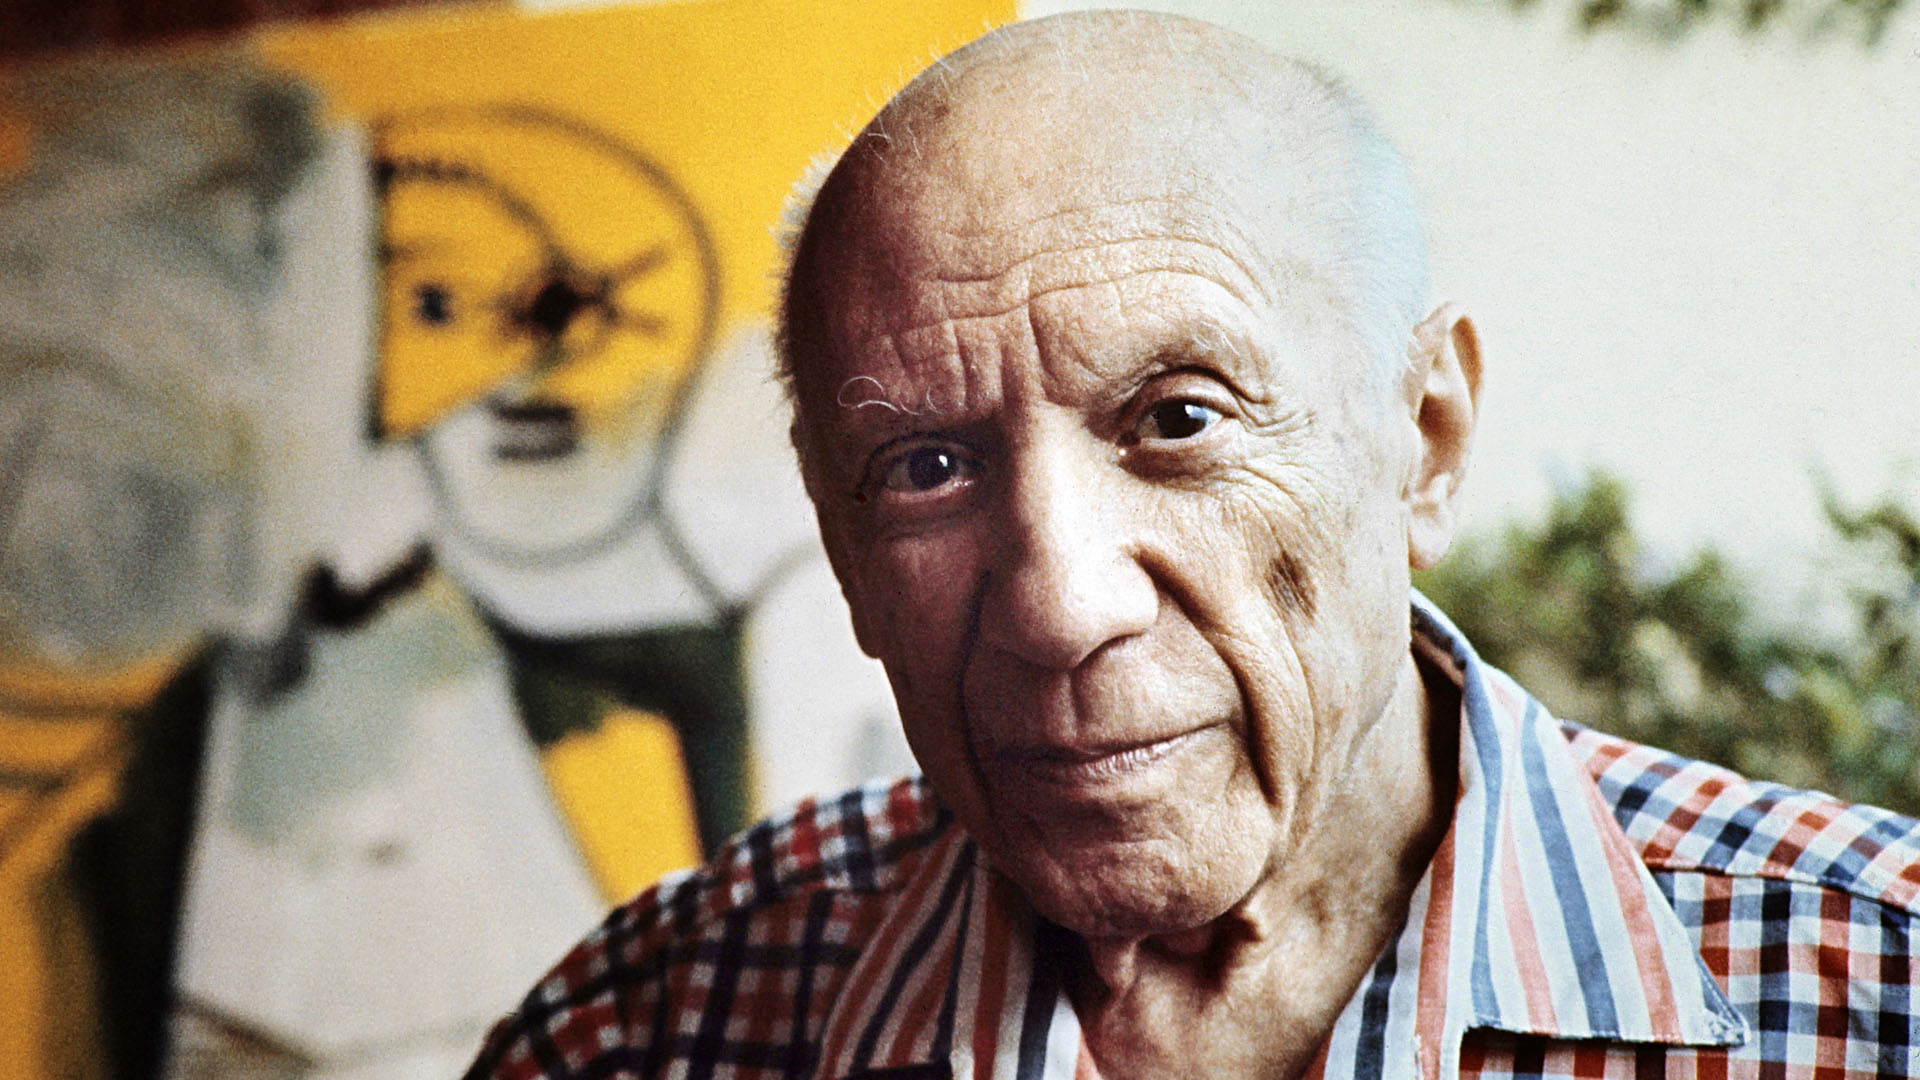 Pablo Picasso murió el 8 de abril de 1973, fecha de la cuál se cumplirán 50 años en 2023